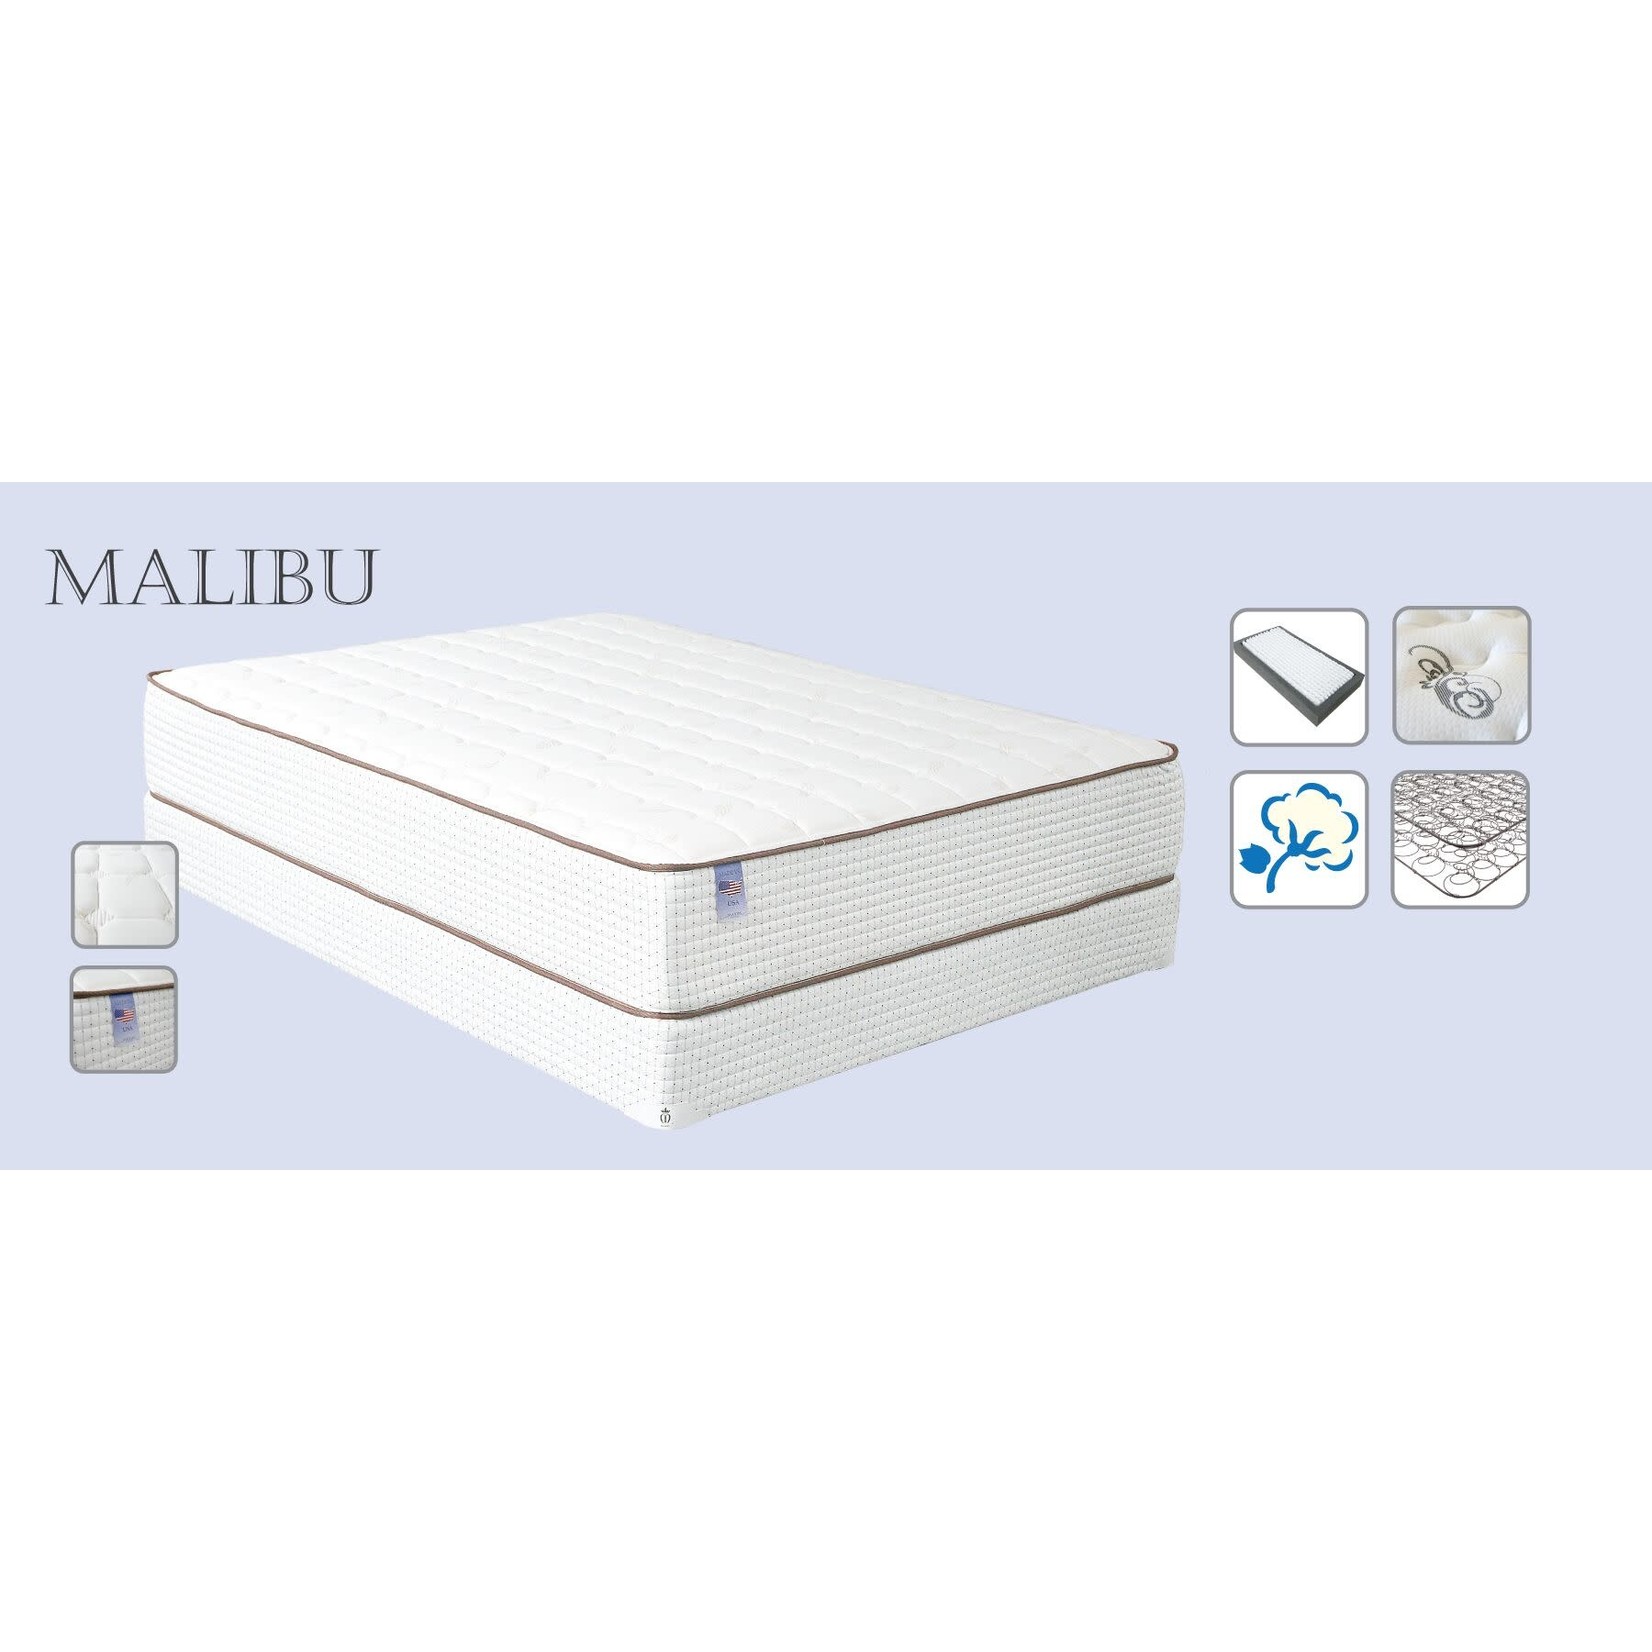 Malibu mattress set